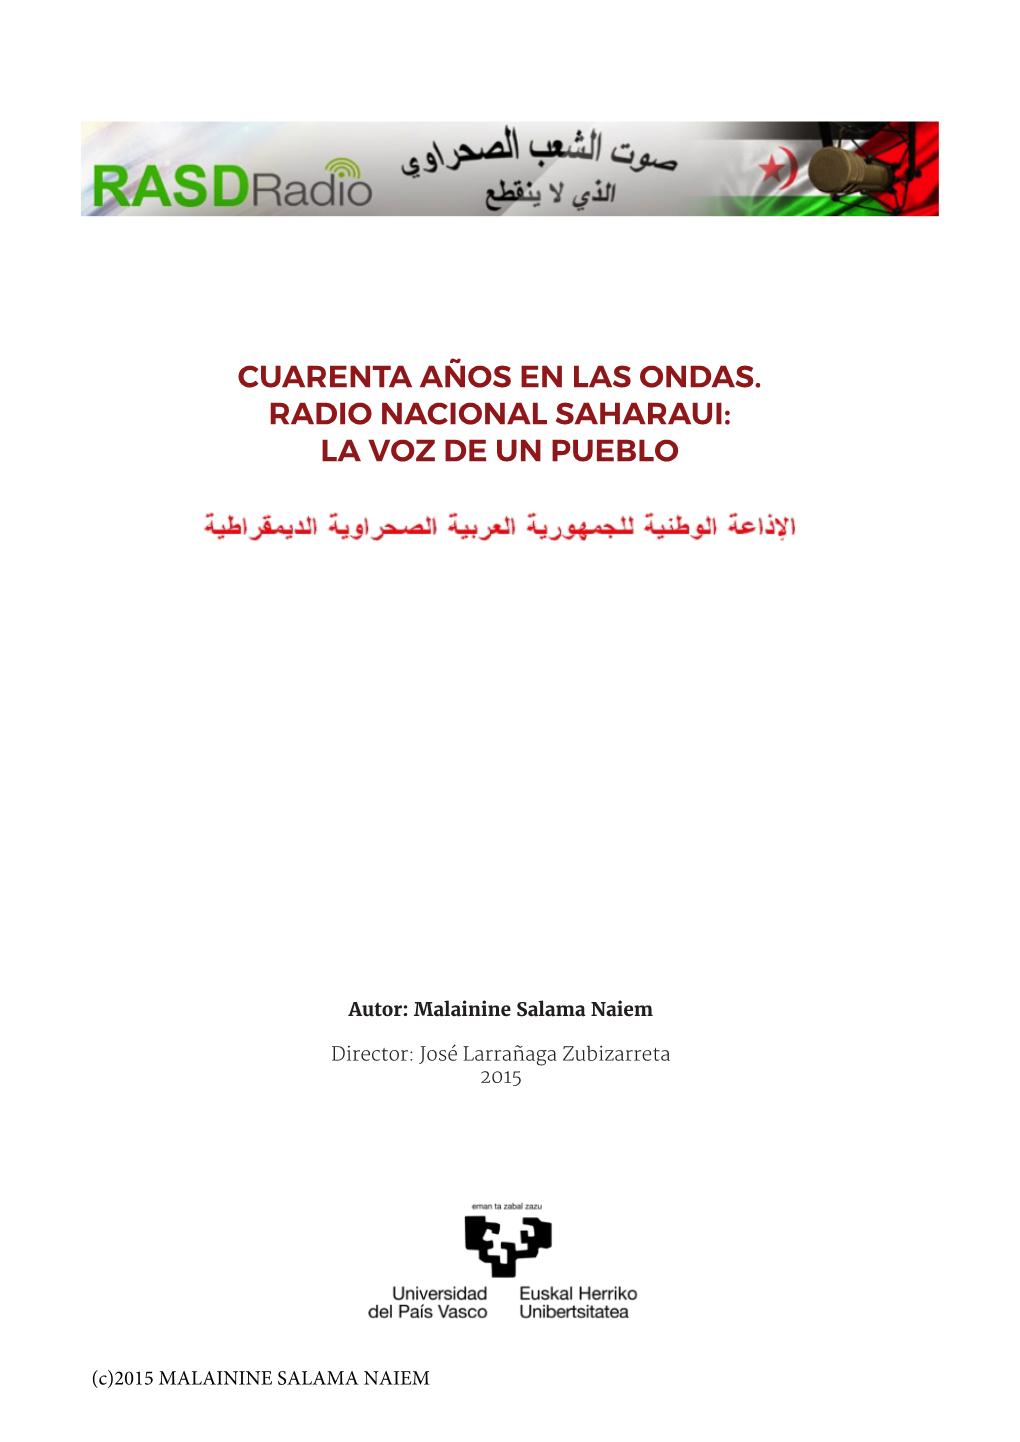 Cuarenta Años En Las Ondas. Radio Nacional Saharaui: La Voz De Un Pueblo